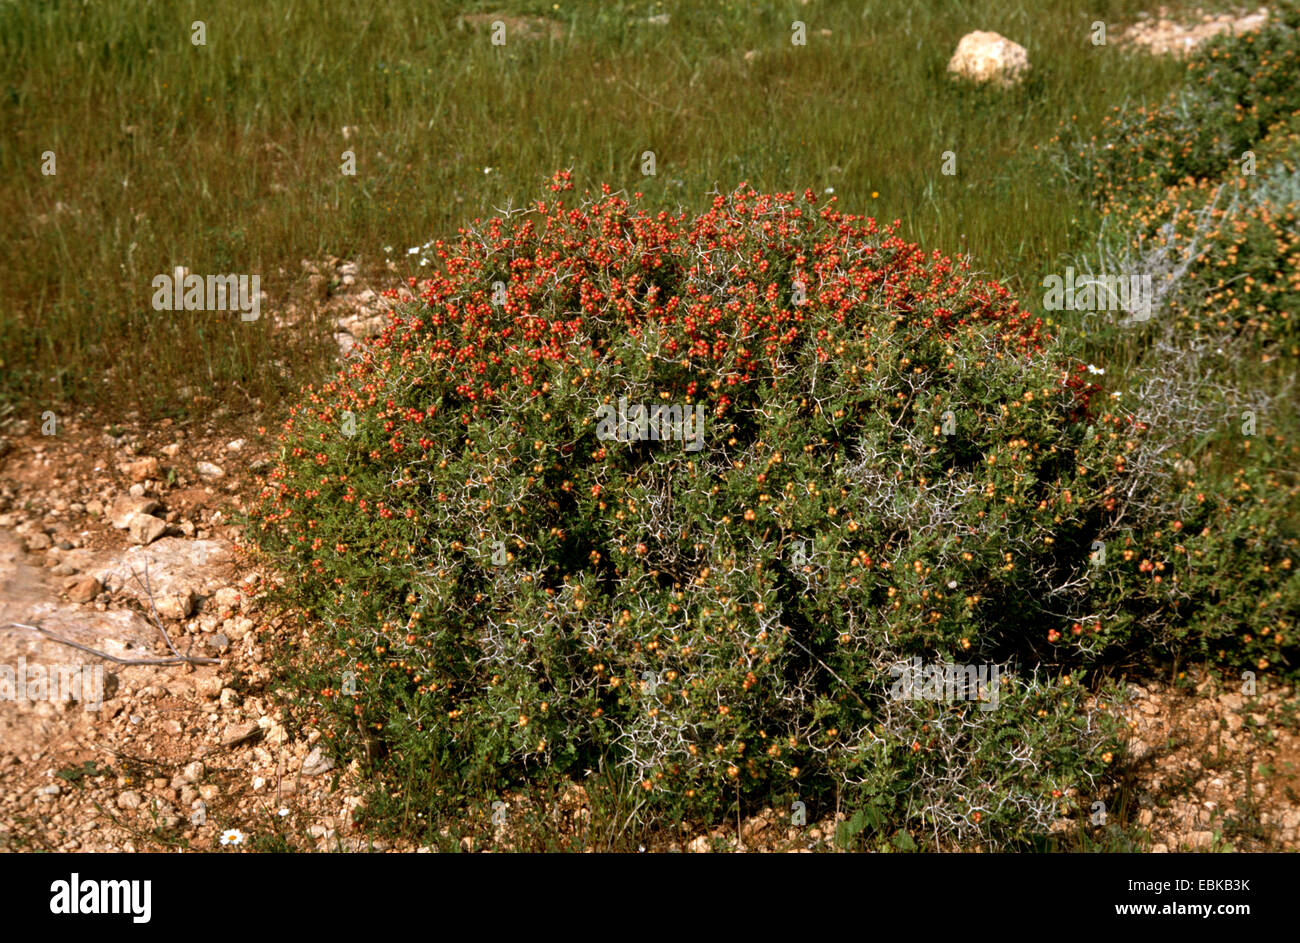 Thorny burnet (Sarcopoterium spinosum, Poterium spinosum), fruiting, Greece Stock Photo